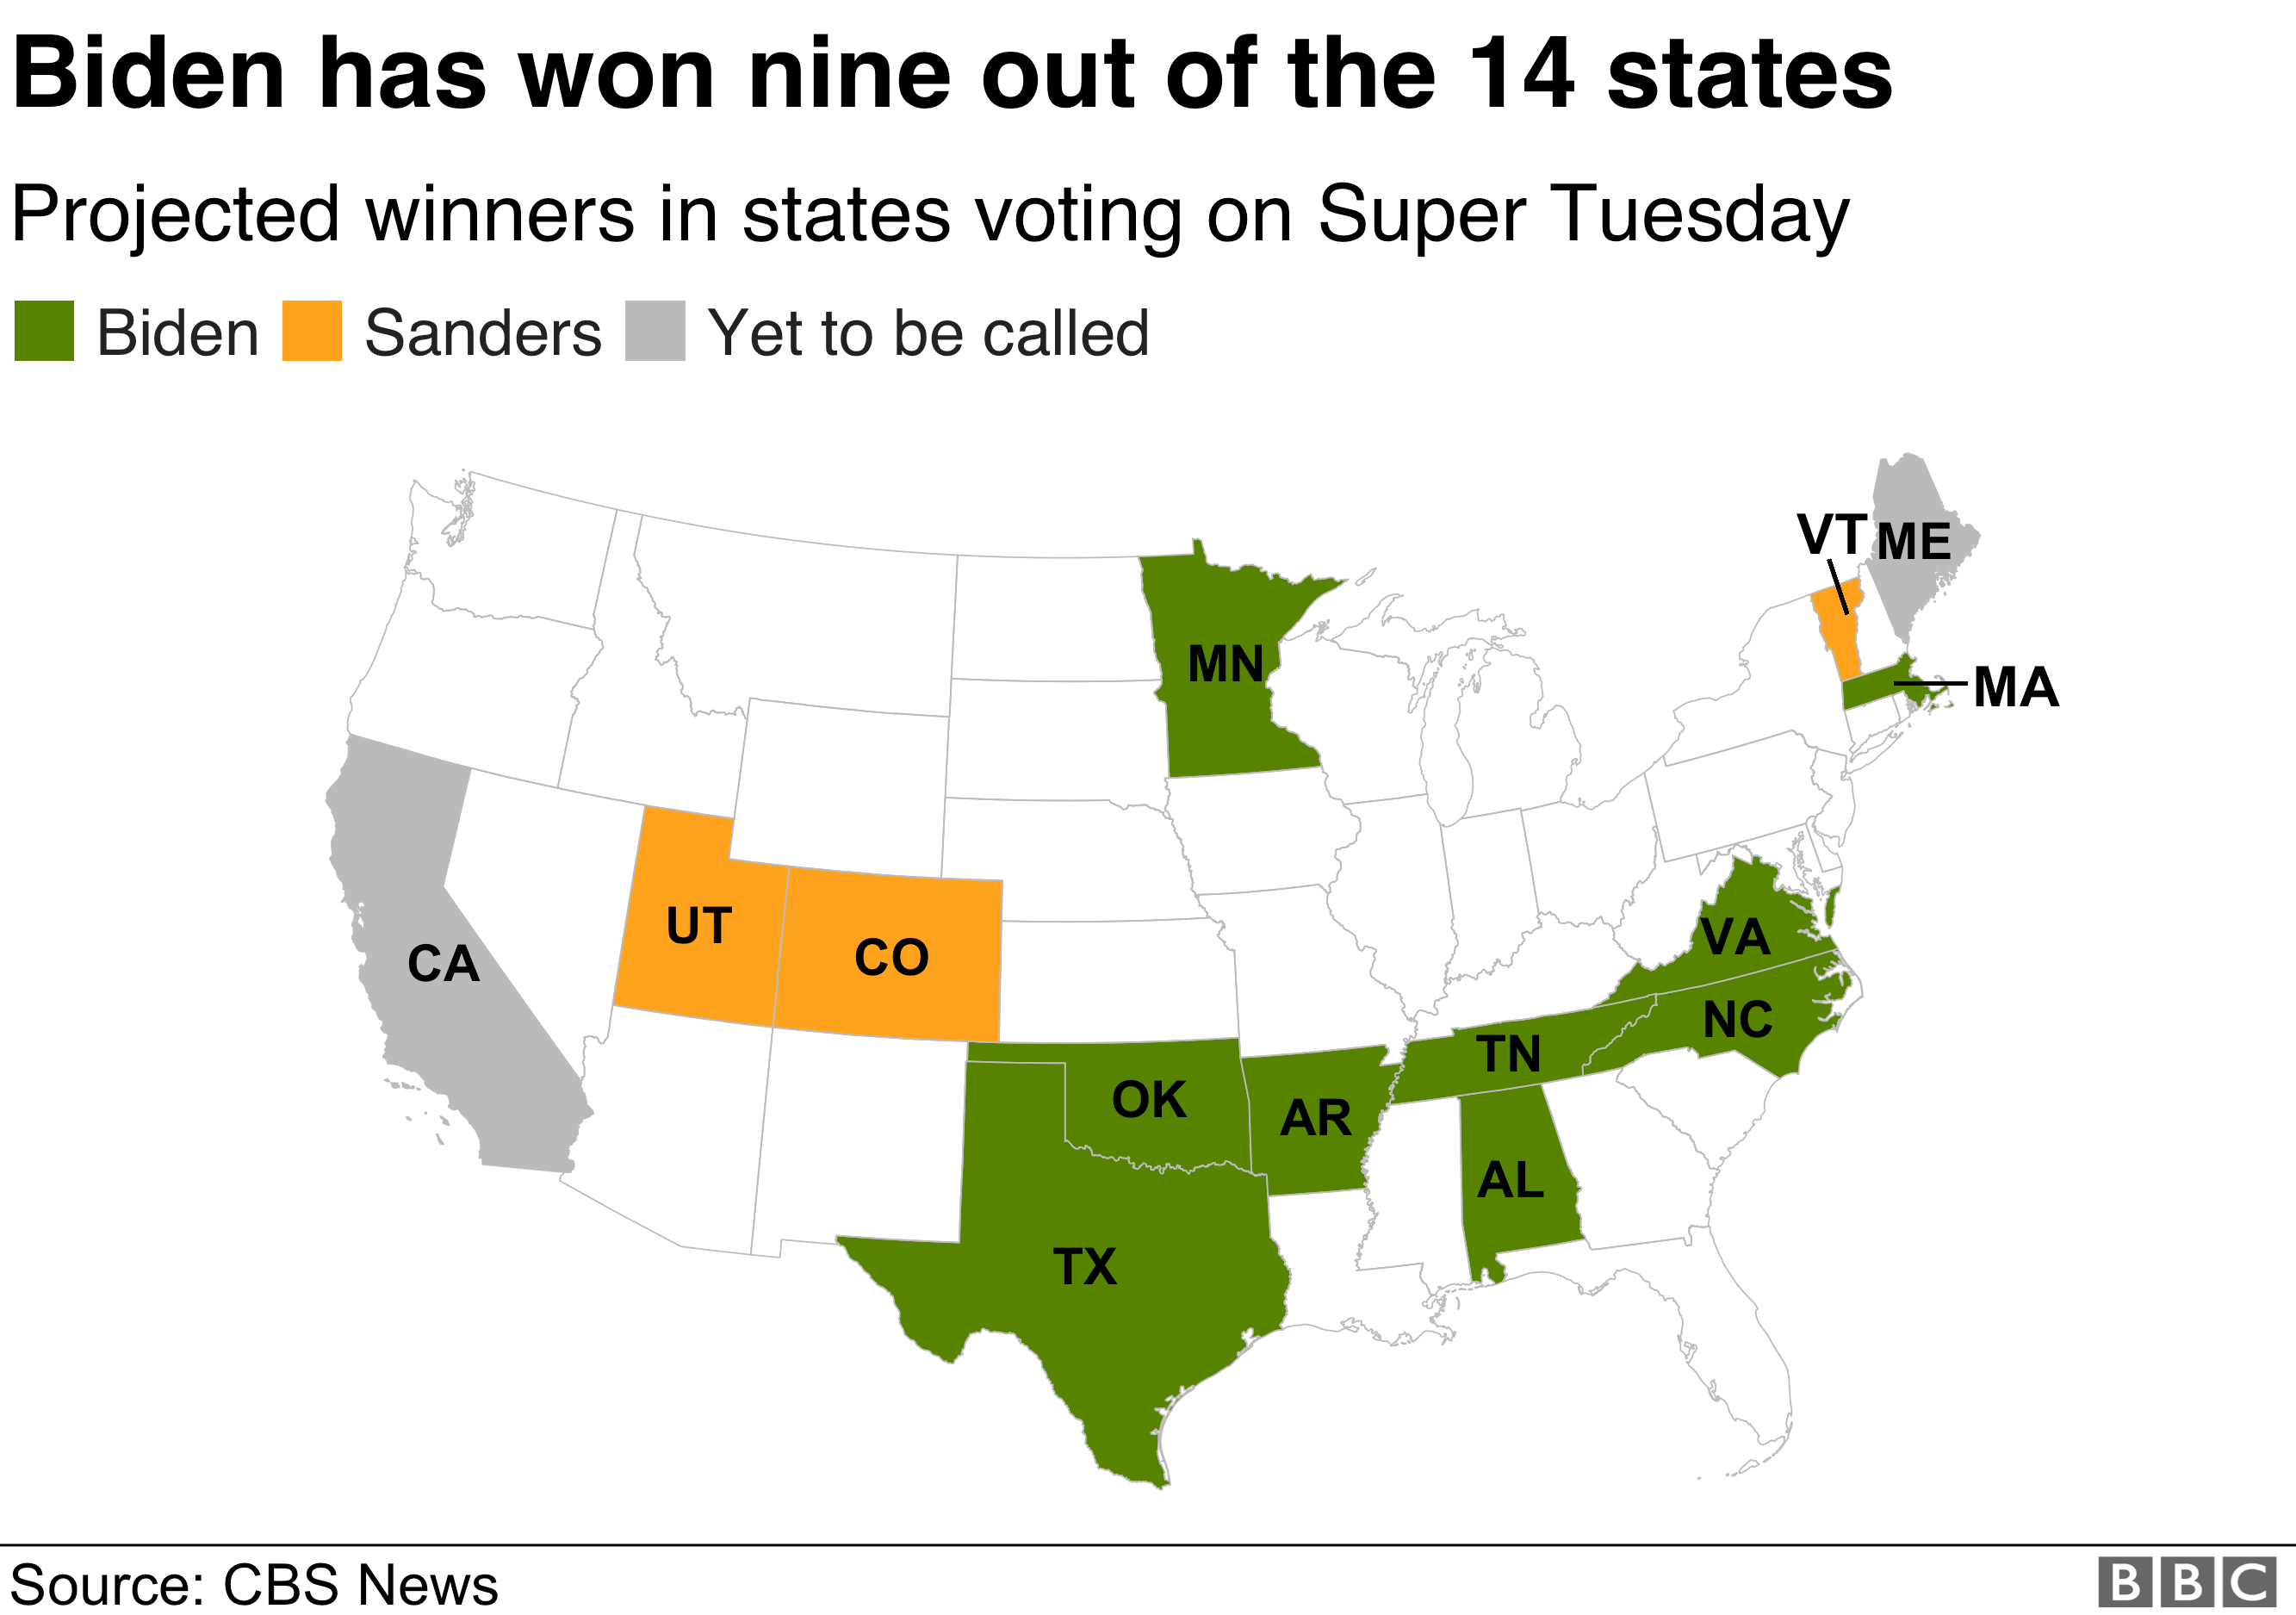 どの候補者がどの州で勝ったかを示す地図。 ジョー・バイデンは、アラバマ、アーカンソー、マサチューセッツ、ミネソタ、ノースカロライナ、オクラホマ、テネシー、テキサス、バージニアで優勝しました。 バーニー・サンダースはコロラド州、ユタ州、バーモント州で優勝しました。 カリフォルニアとメインはまだ呼ばれていない。